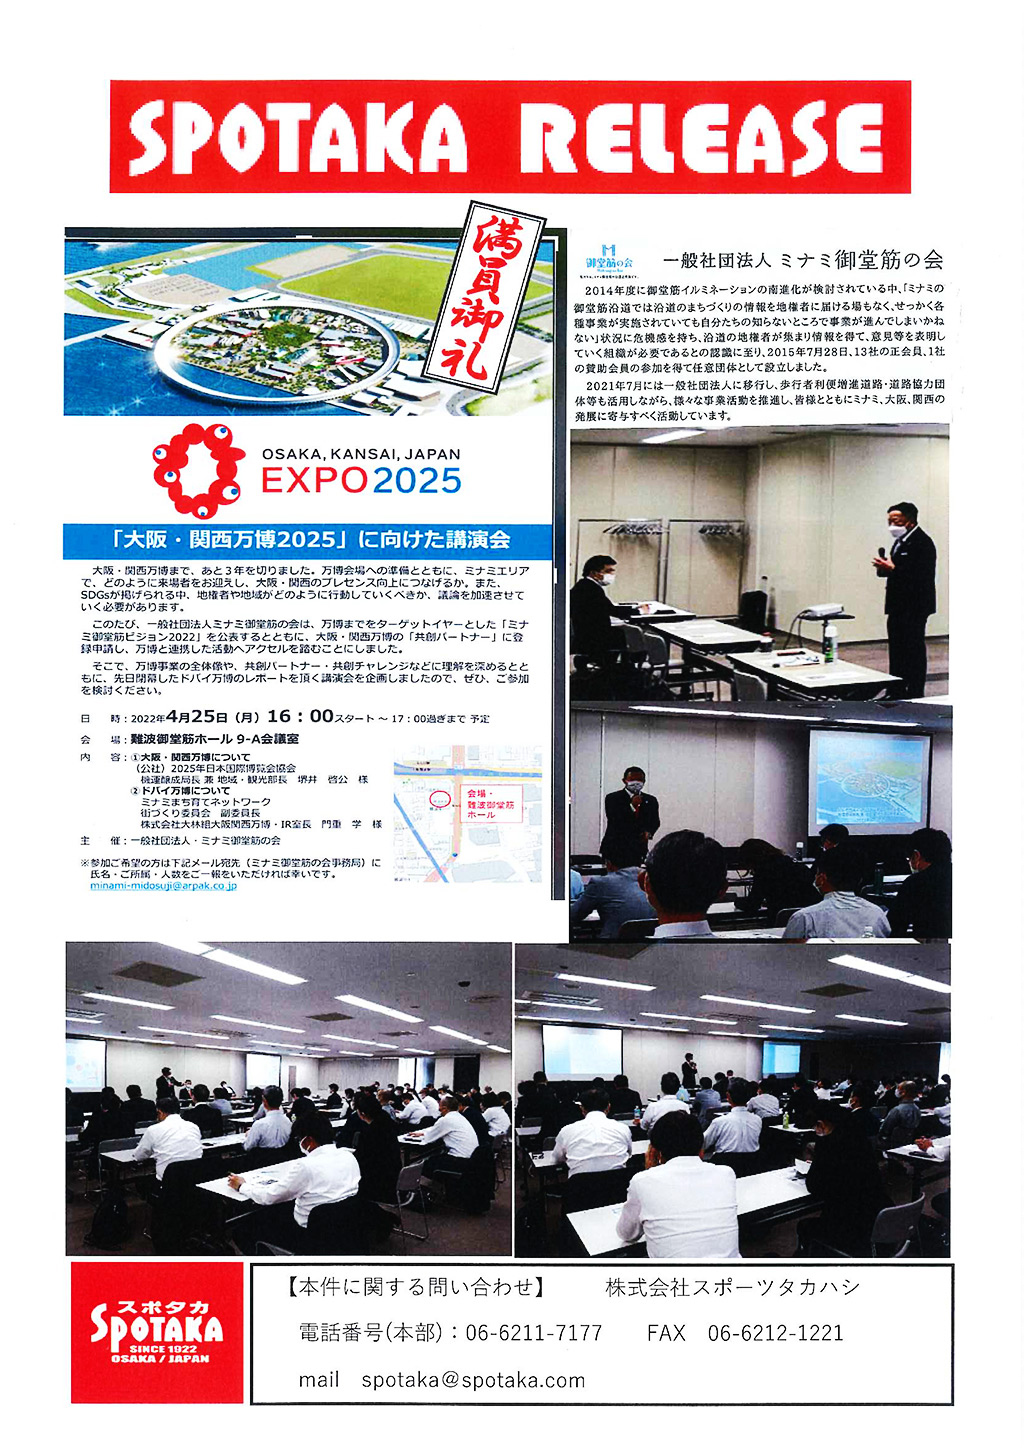 リリース情報更新「大阪・関西万博2025に向けた講演会」